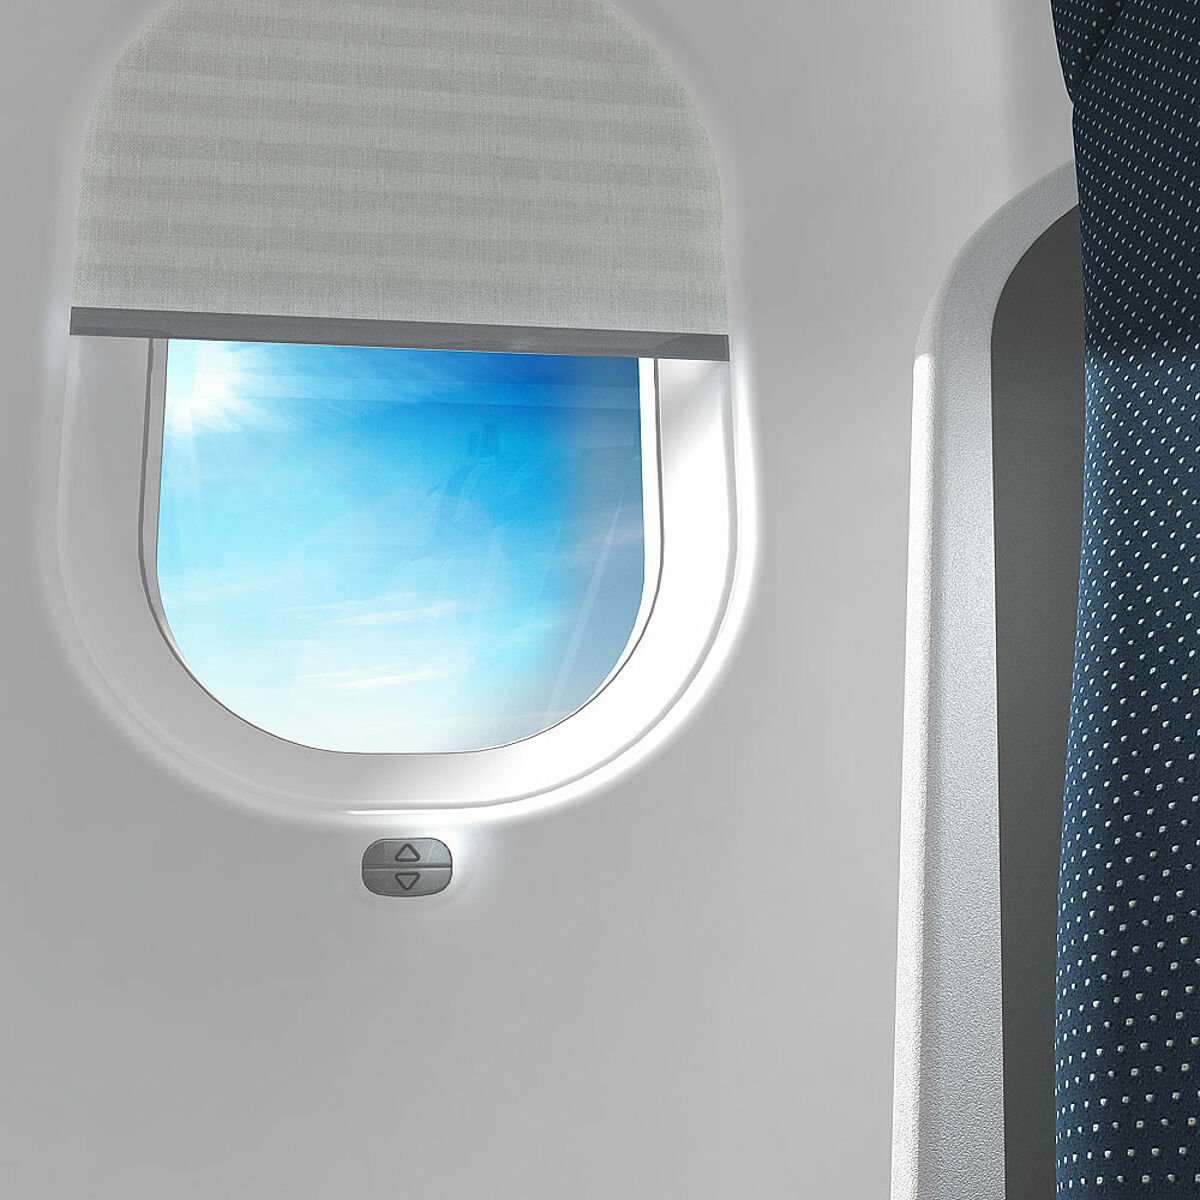 Шторки иллюминаторов. Боинг 777 иллюминатор. Шторка иллюминатора. Шторка иллюминатора в самолете. Окно самолета.